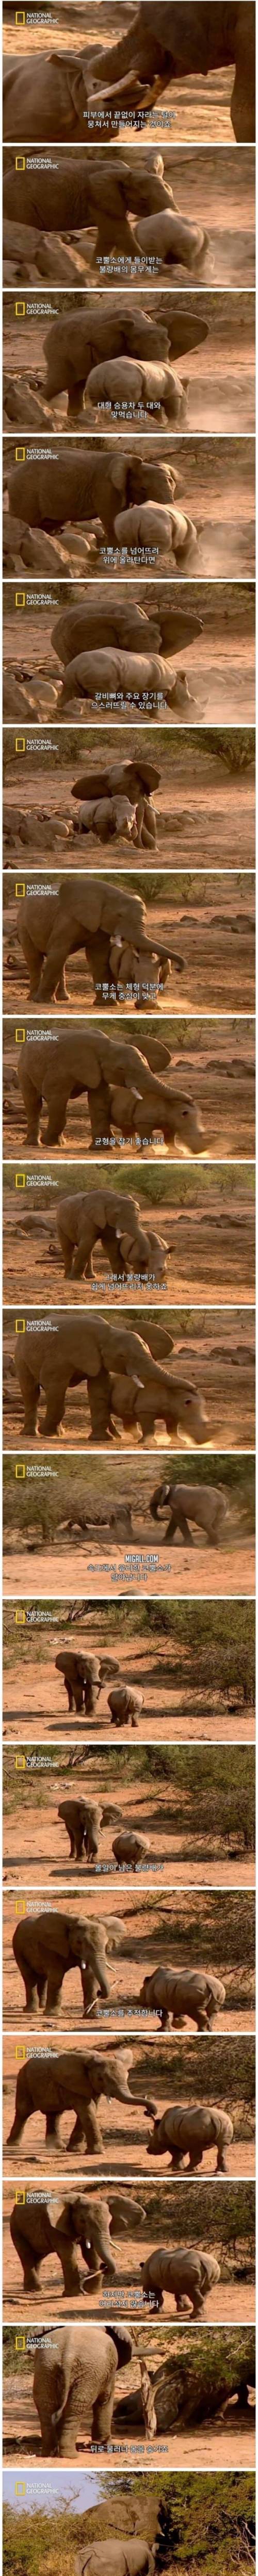 12 코끼리와 코뿔소..jpg